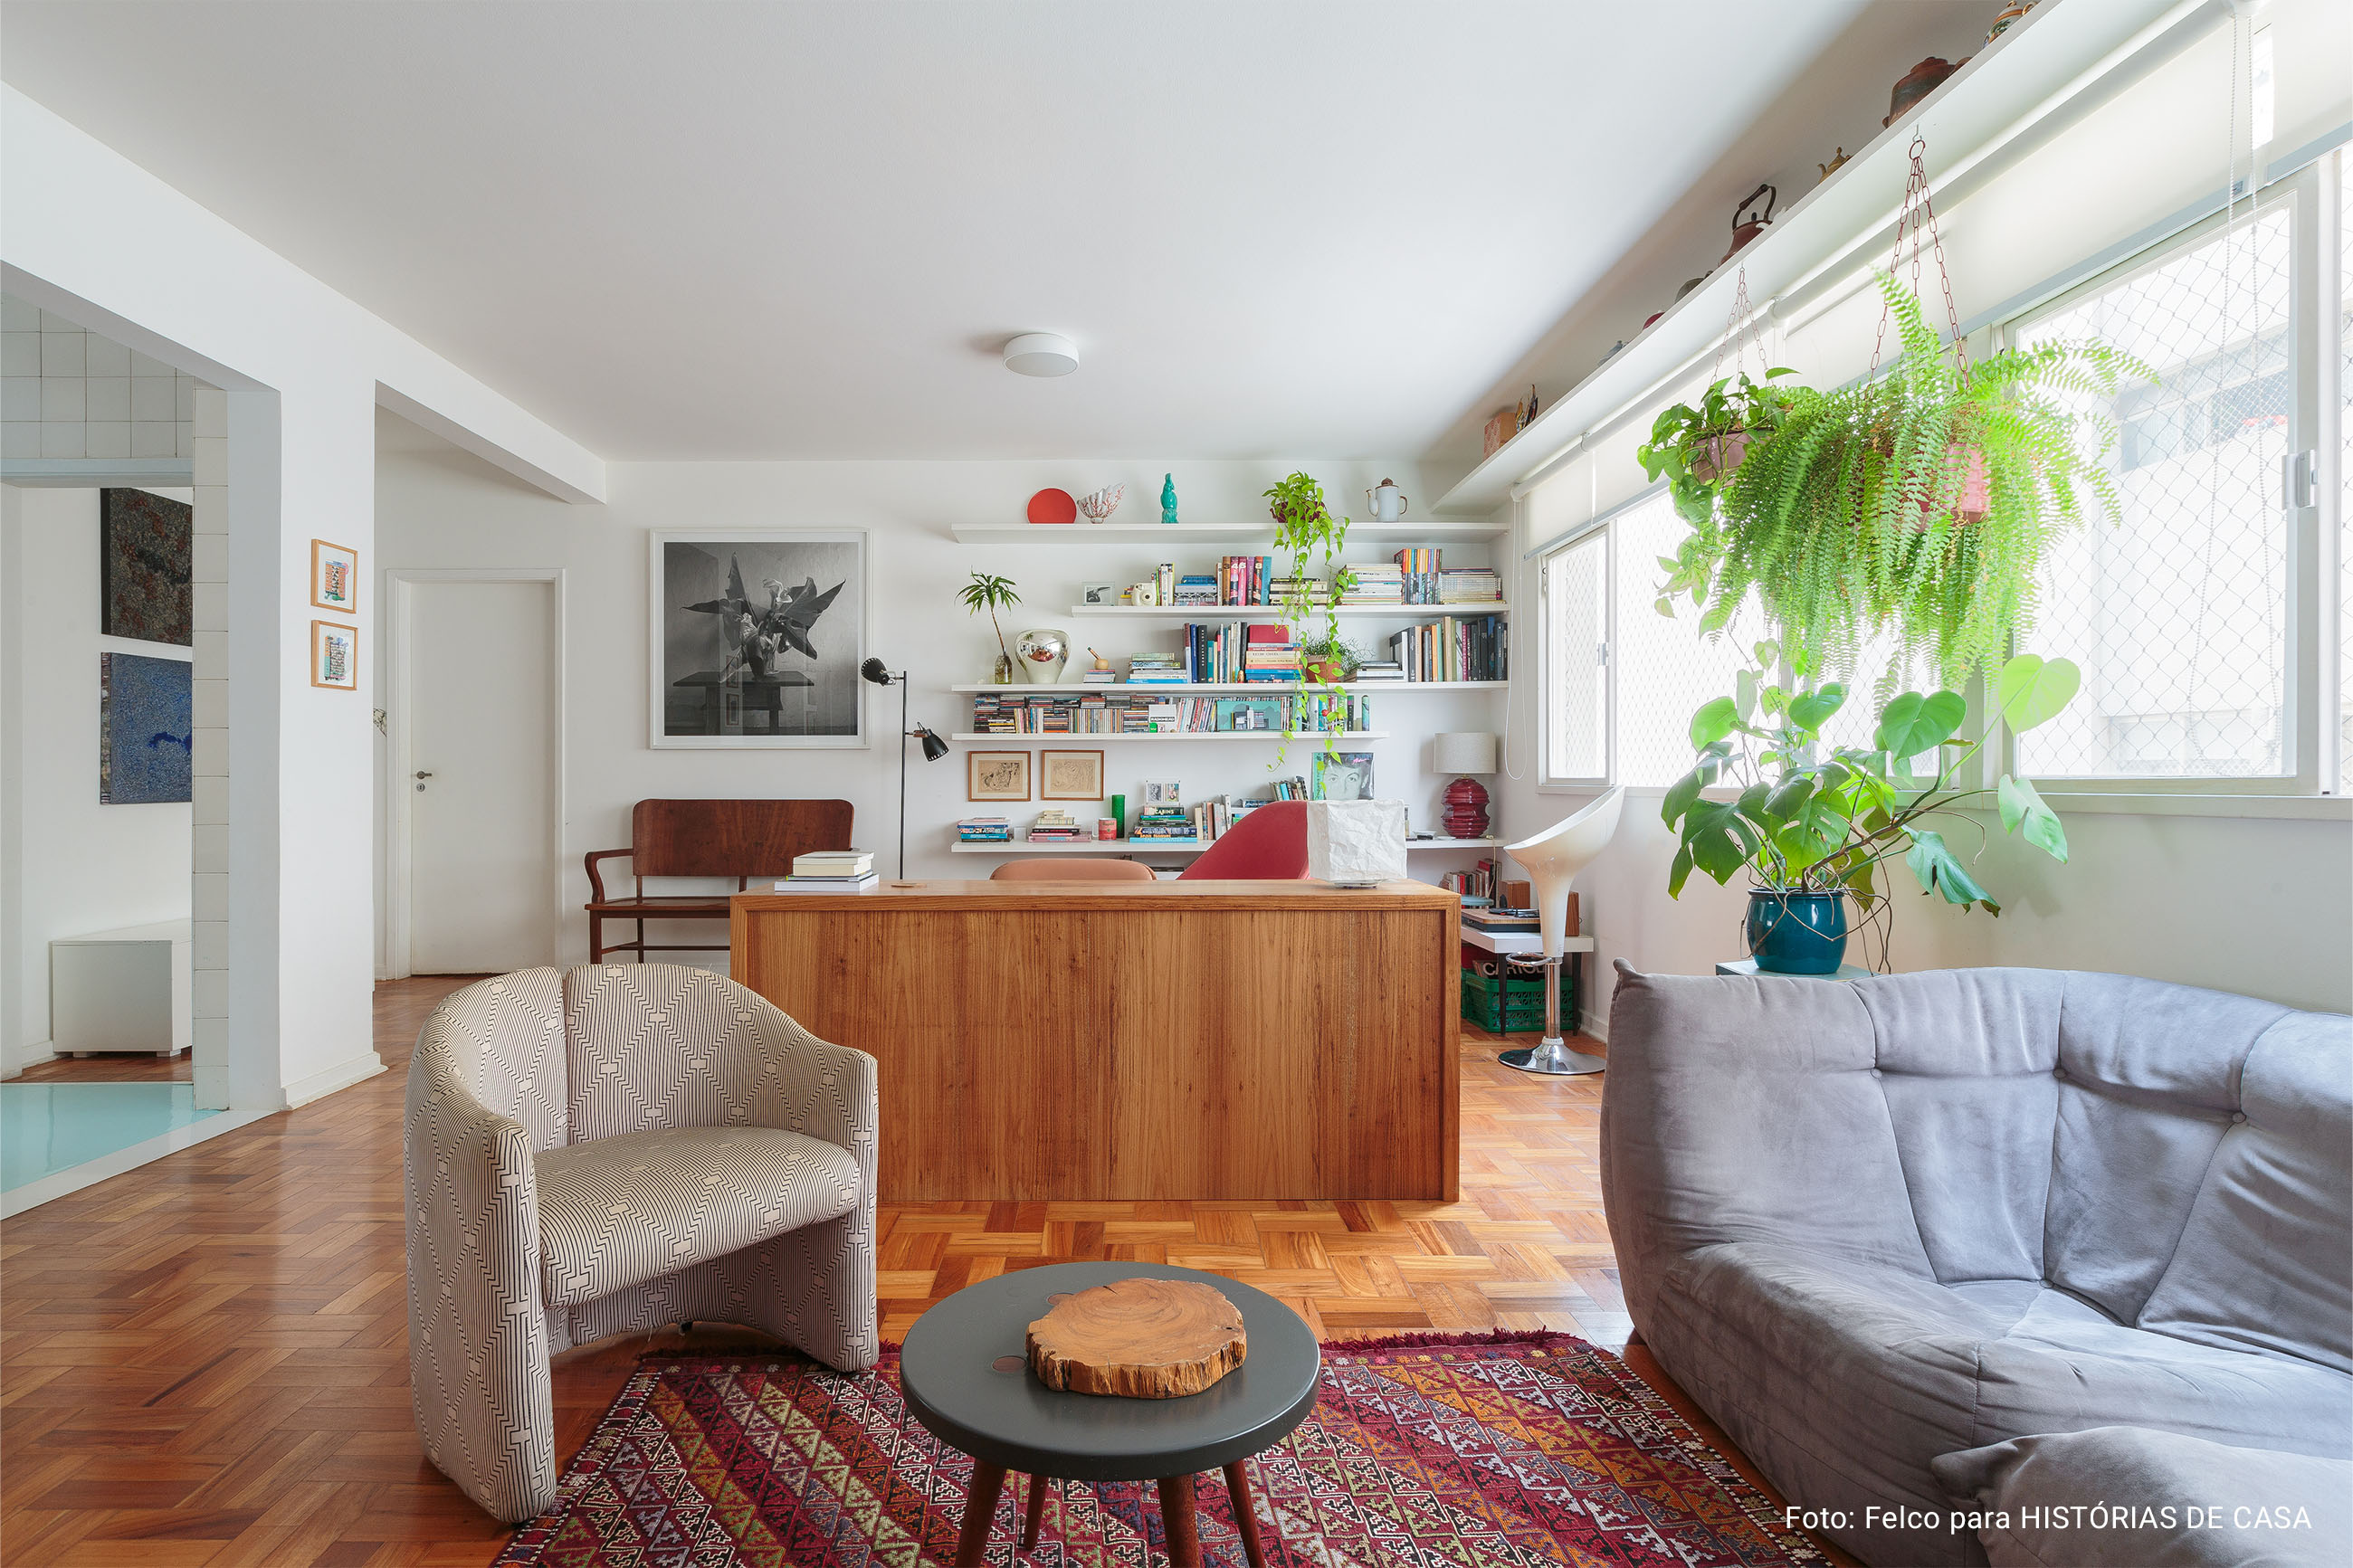 Apartamento com piso de taco, cozinha colorida, móveis vintage e eletrodomésticos da Electrolux